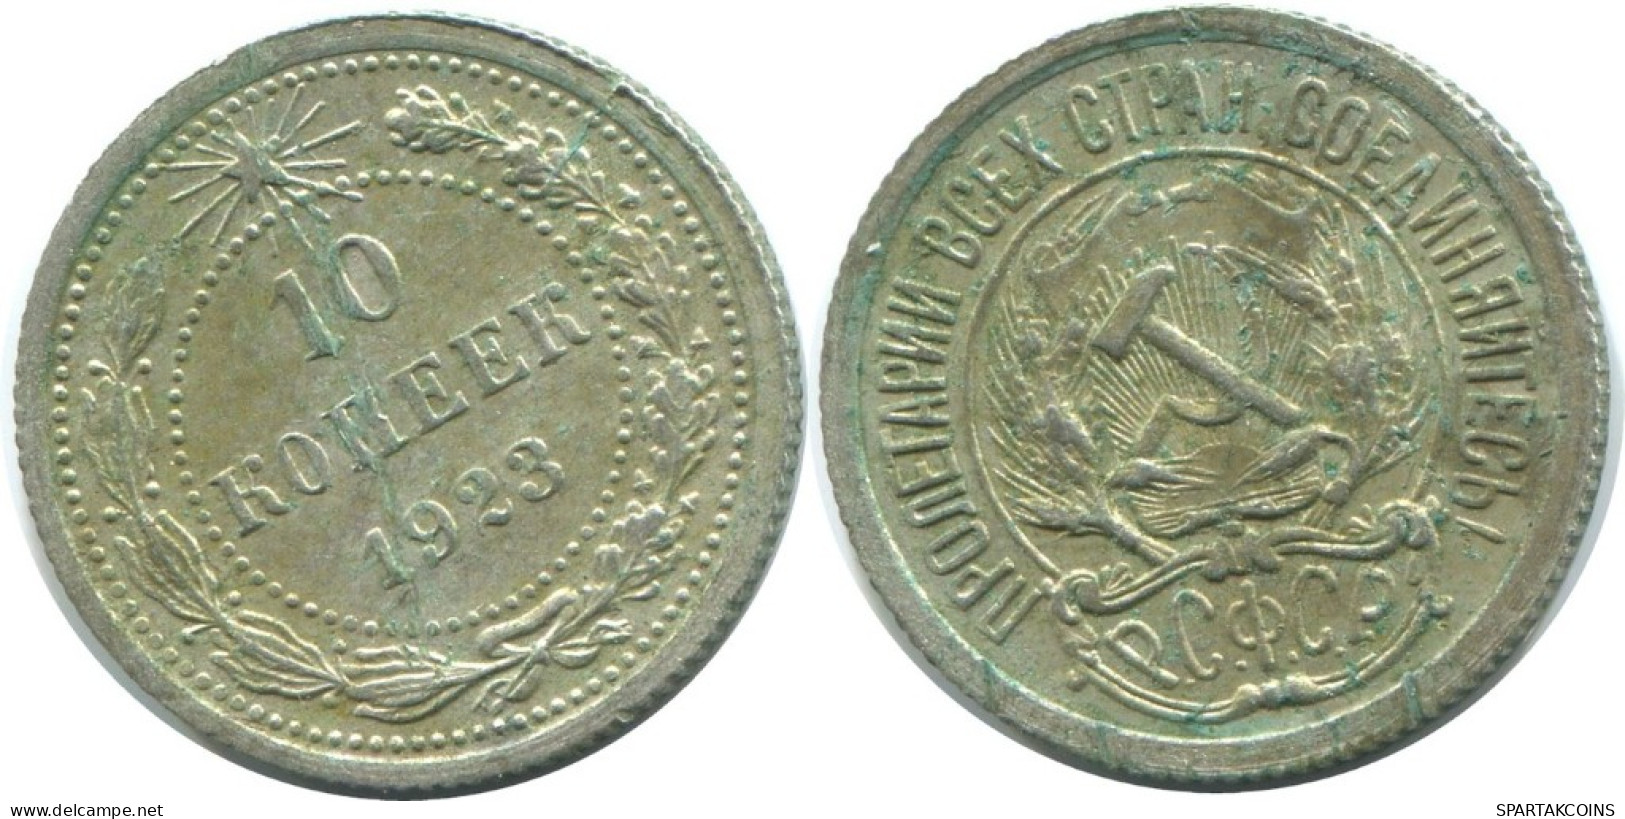 10 KOPEKS 1923 RUSSLAND RUSSIA RSFSR SILBER Münze HIGH GRADE #AE953.4.D.A - Russia